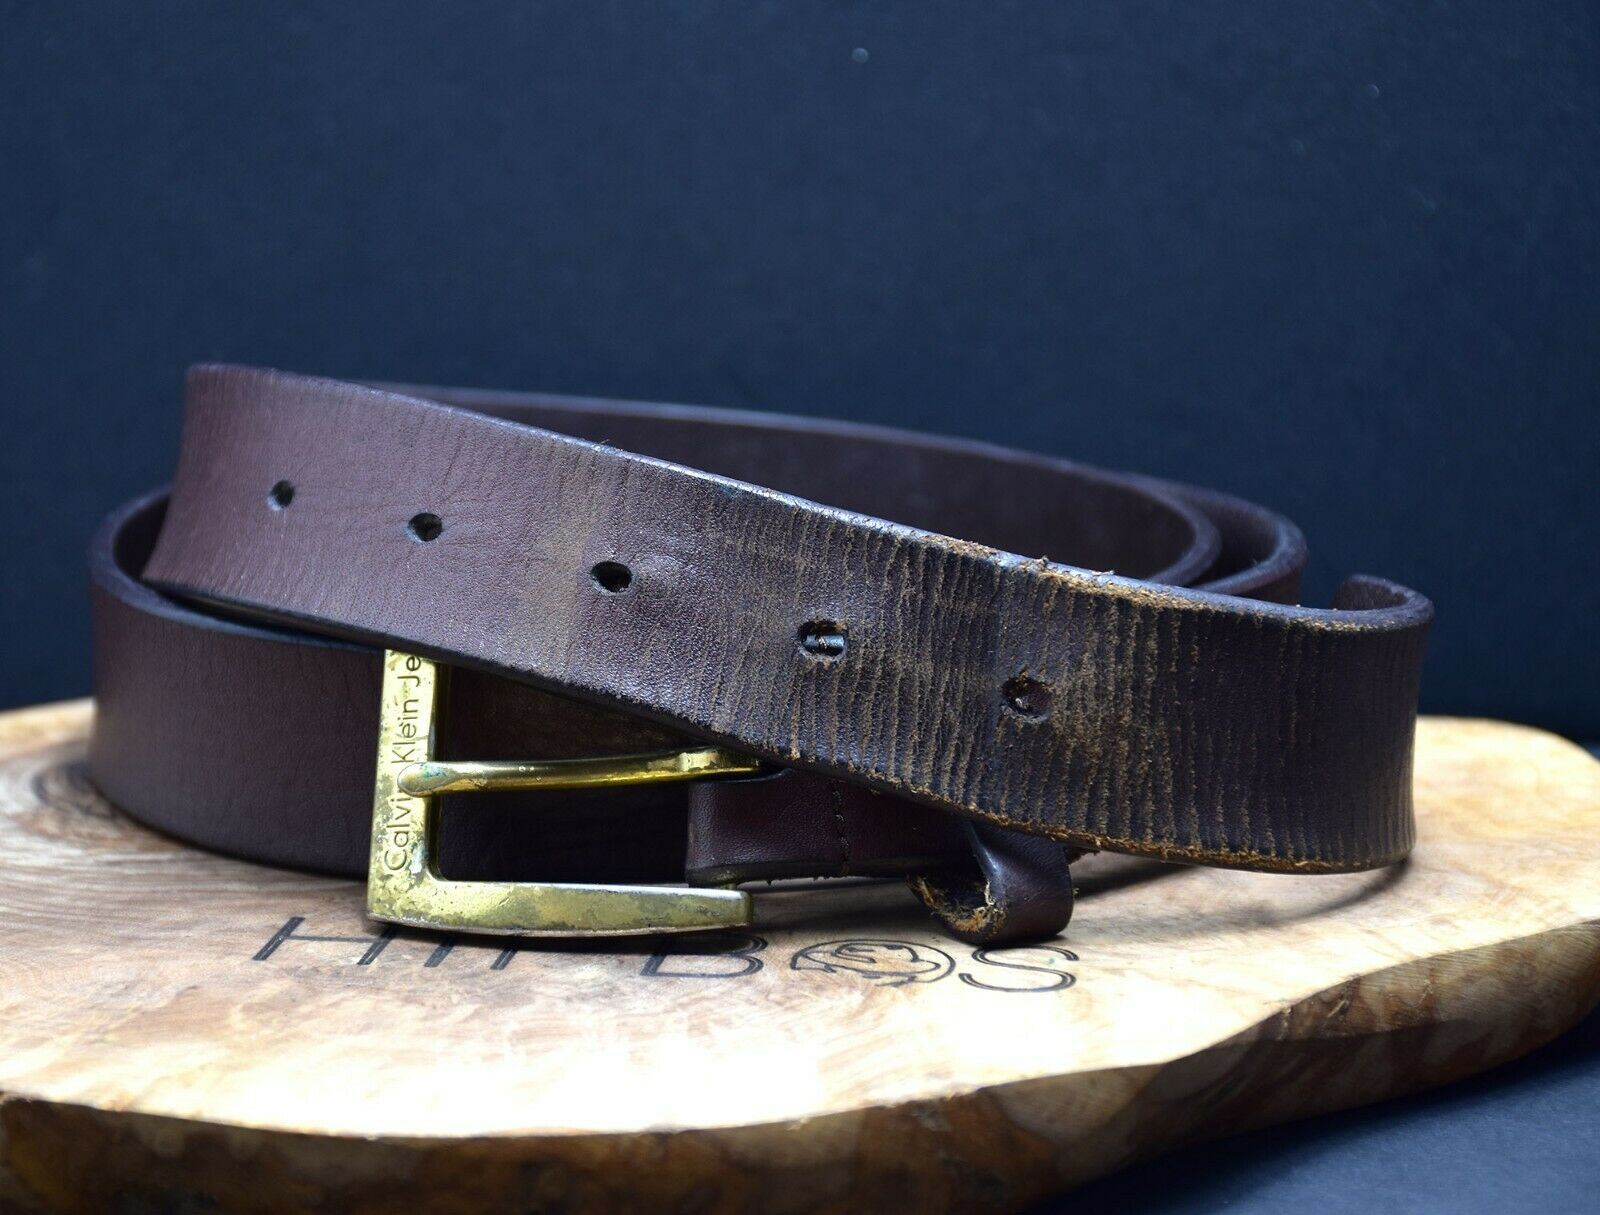 Mens Leather Belt, Brown